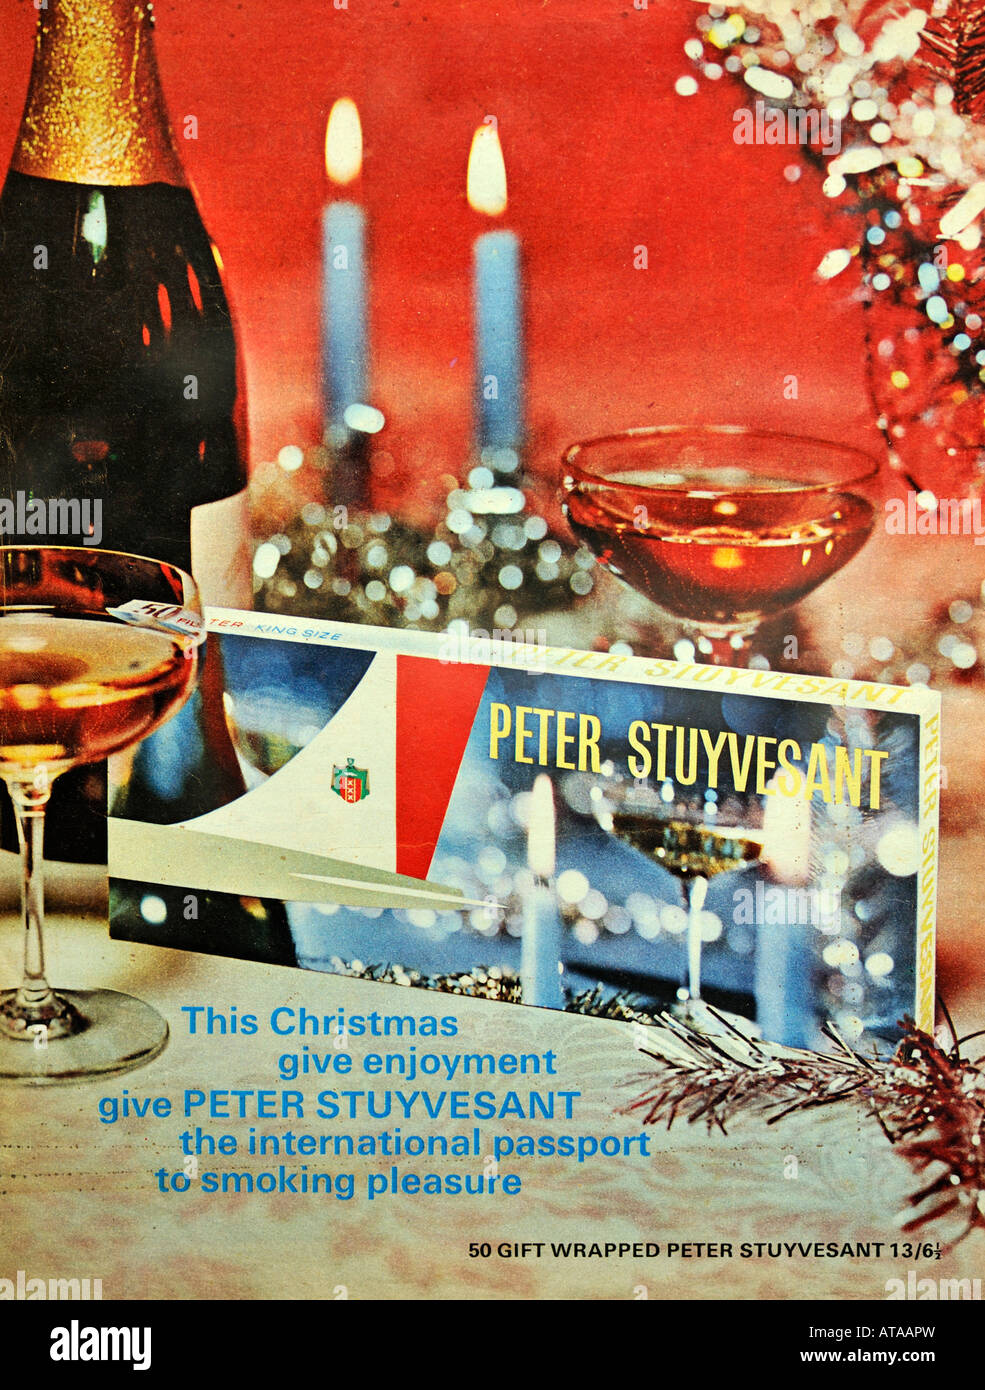 Peter Stuyvesant Zigaretten Weihnachten Anzeige Dezember 1966 nur zu redaktionellen Zwecken Stockfoto